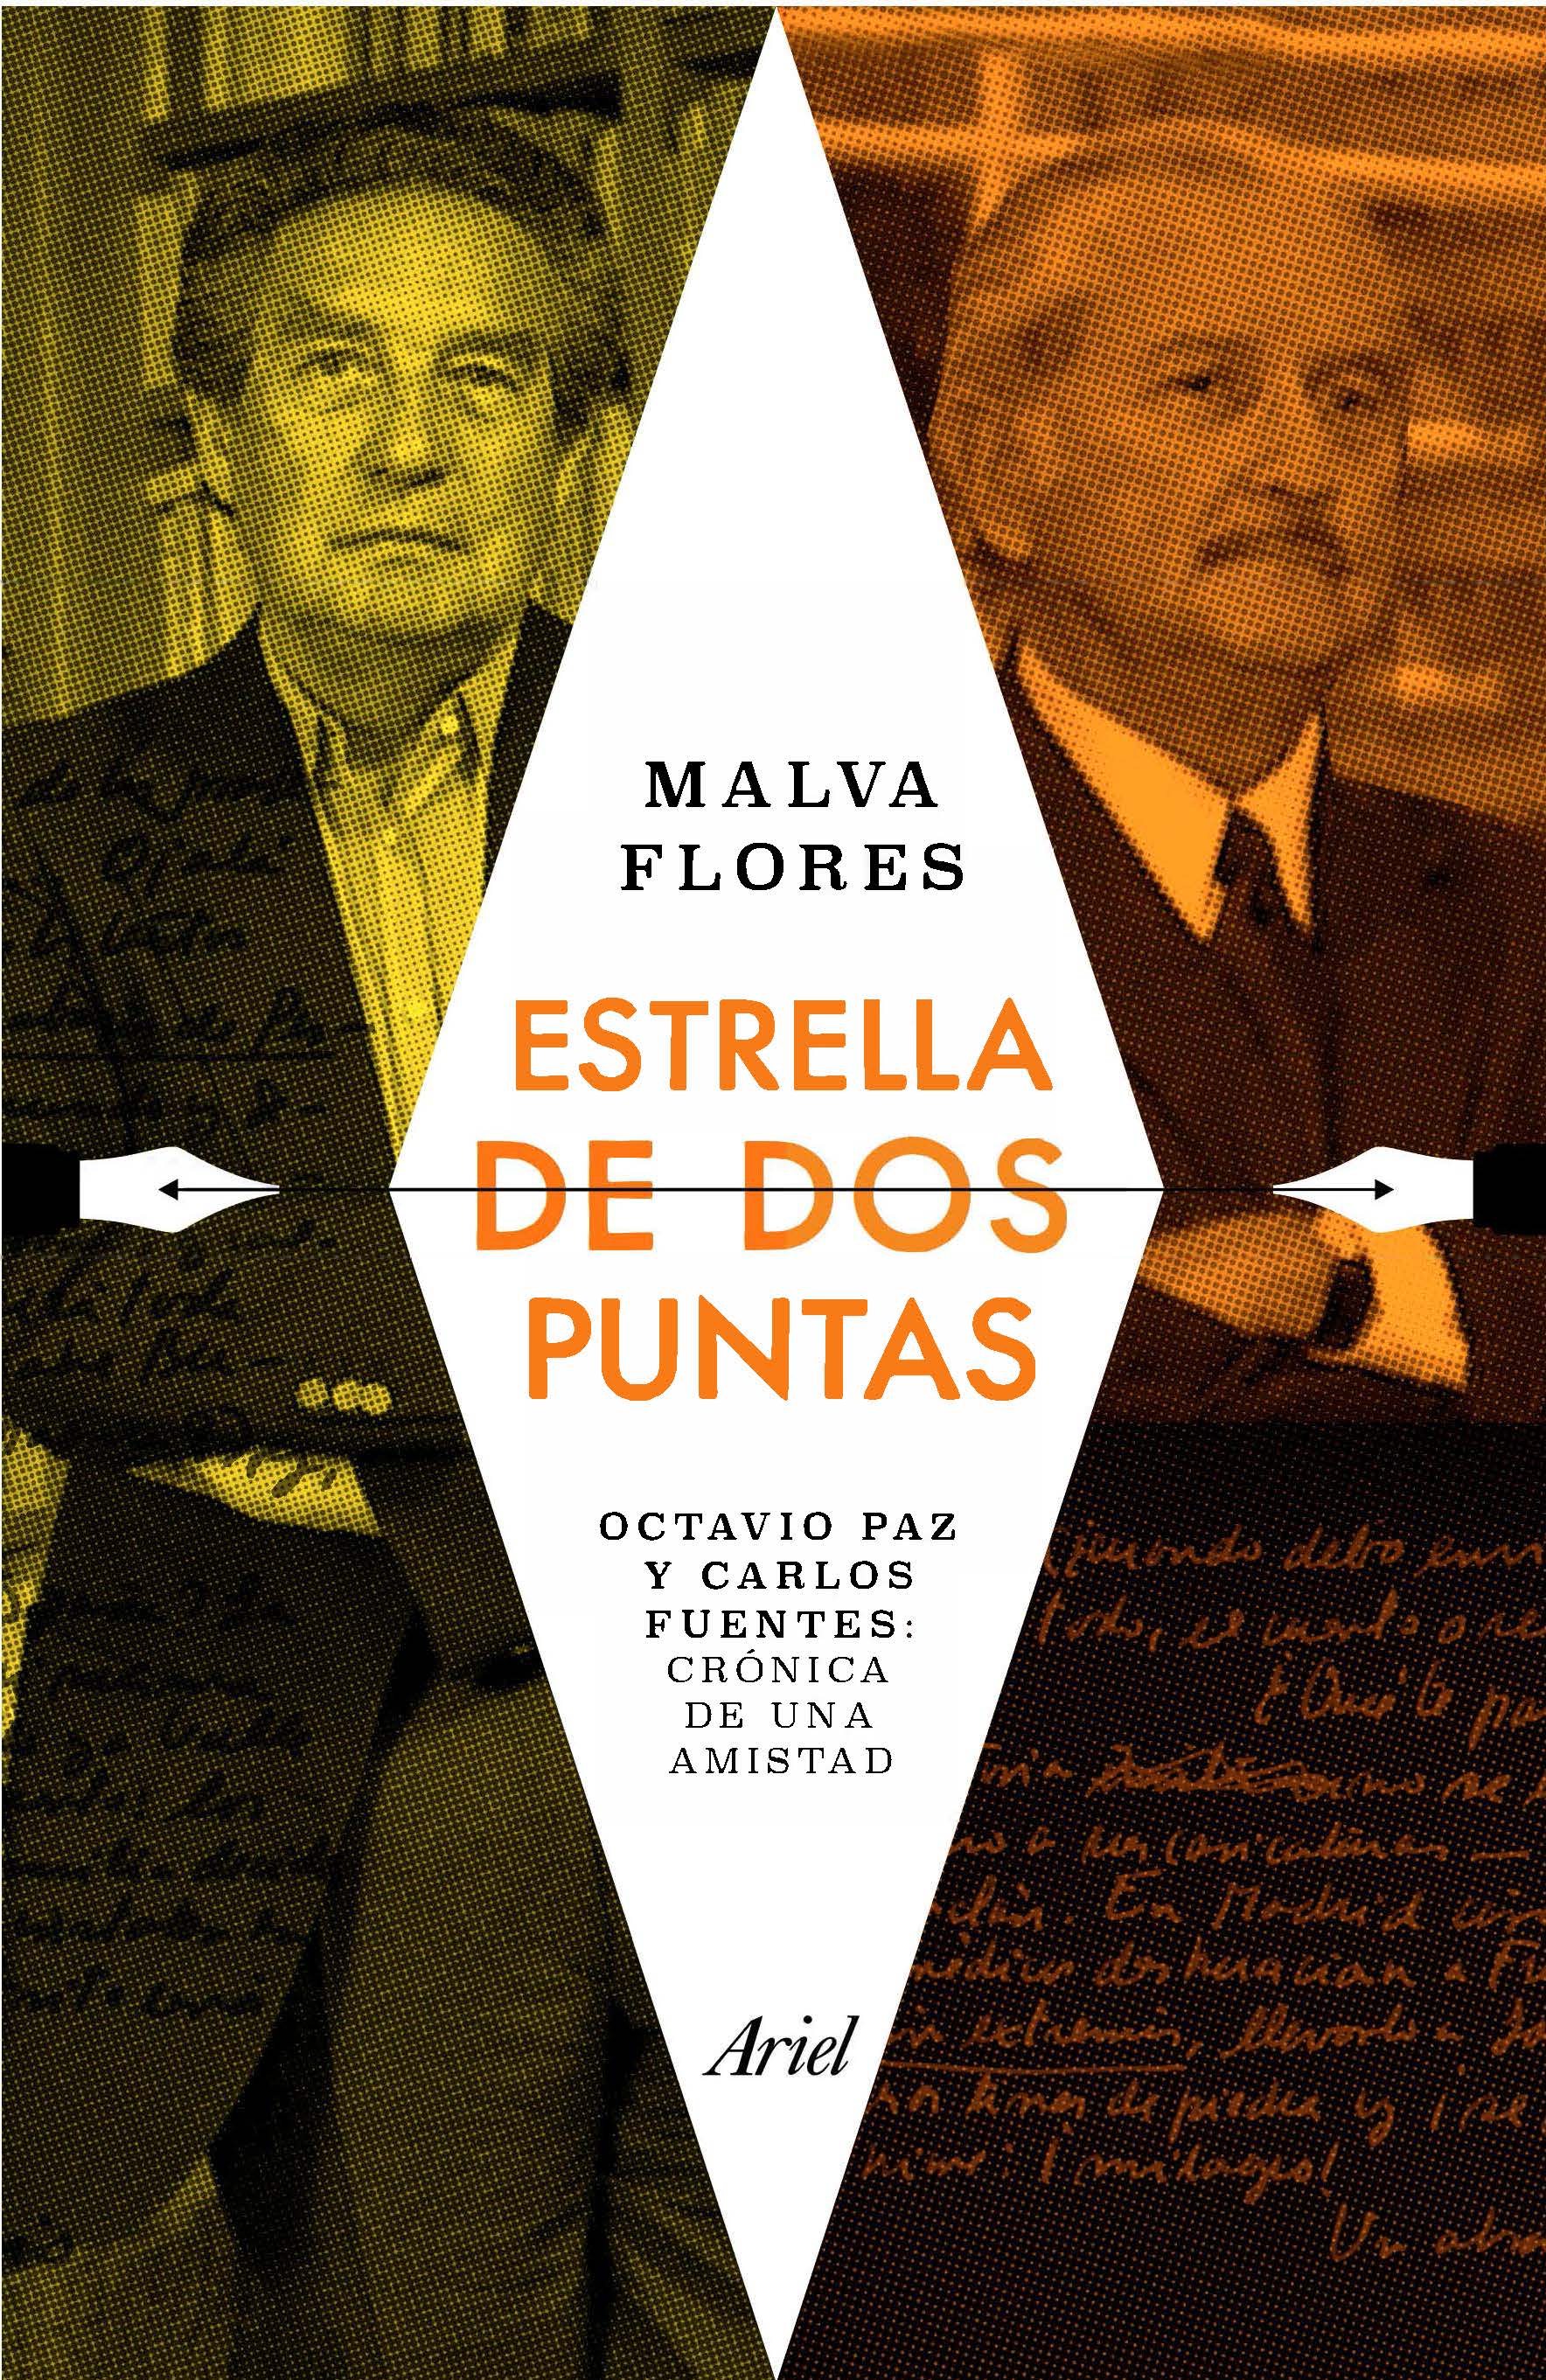 Portada del libro Flores, Malva (2020). Estrella de dos puntas. Octavio Paz y Carlos Fuentes: crónica de una amistad. Ariel. 